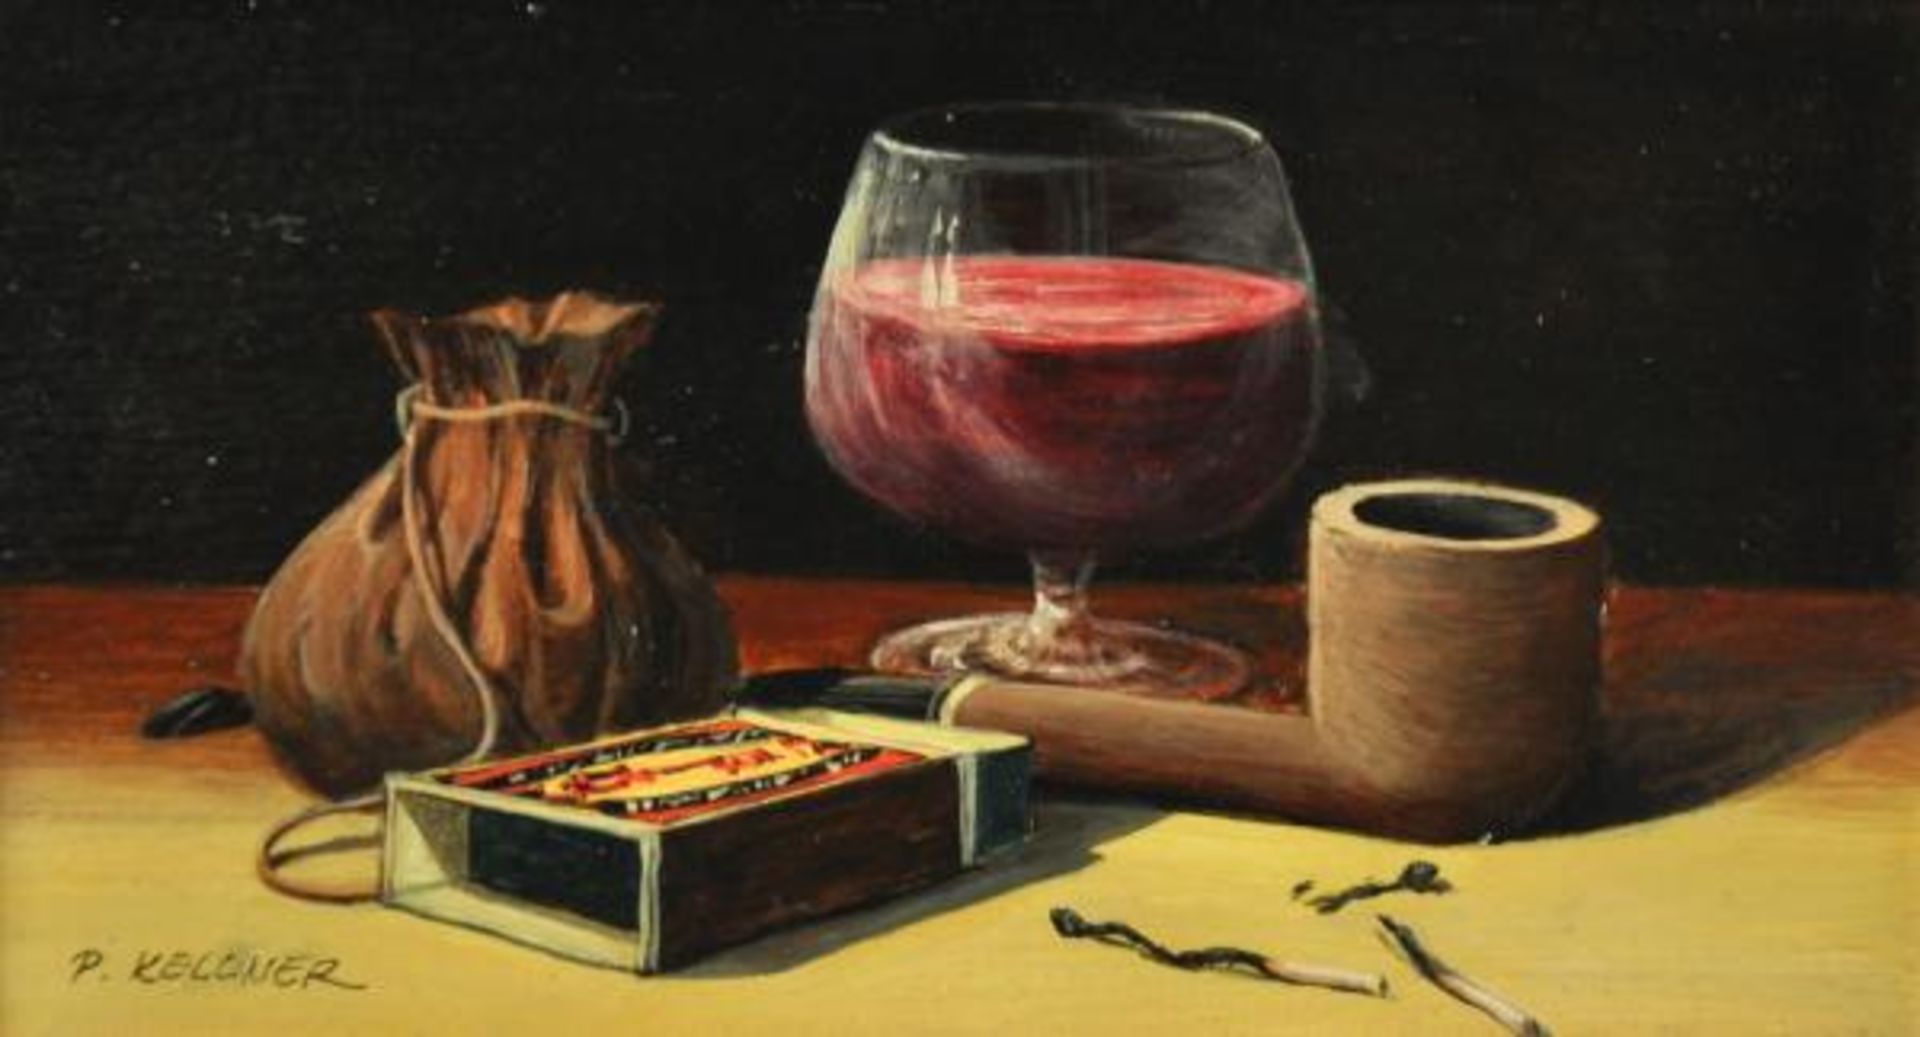 KELLNER Pavel (Tschechien 2.Hälfte 20.Jh.) "Abendgenuß" Stilleben mit Rotweinglas, Pfeife, Tabak und